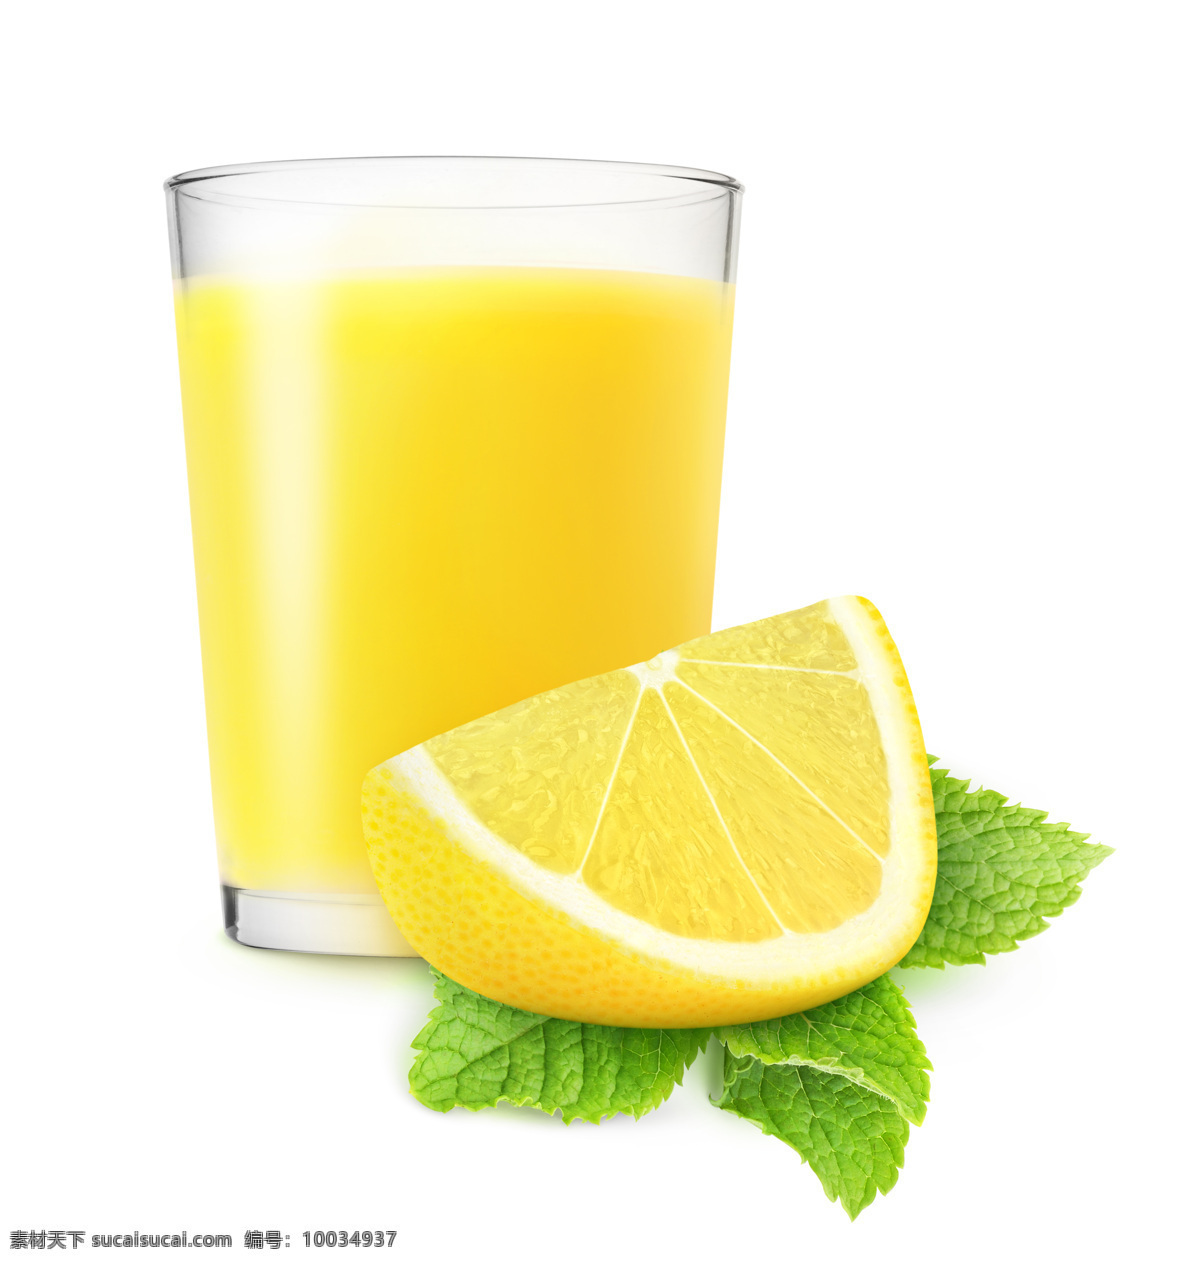 黄色柠檬果汁 黄色 柠檬 果汁 柠檬汁 黄色果汁 饮料 液体 玻璃杯 杯子 绿叶 饮料酒水 餐饮美食